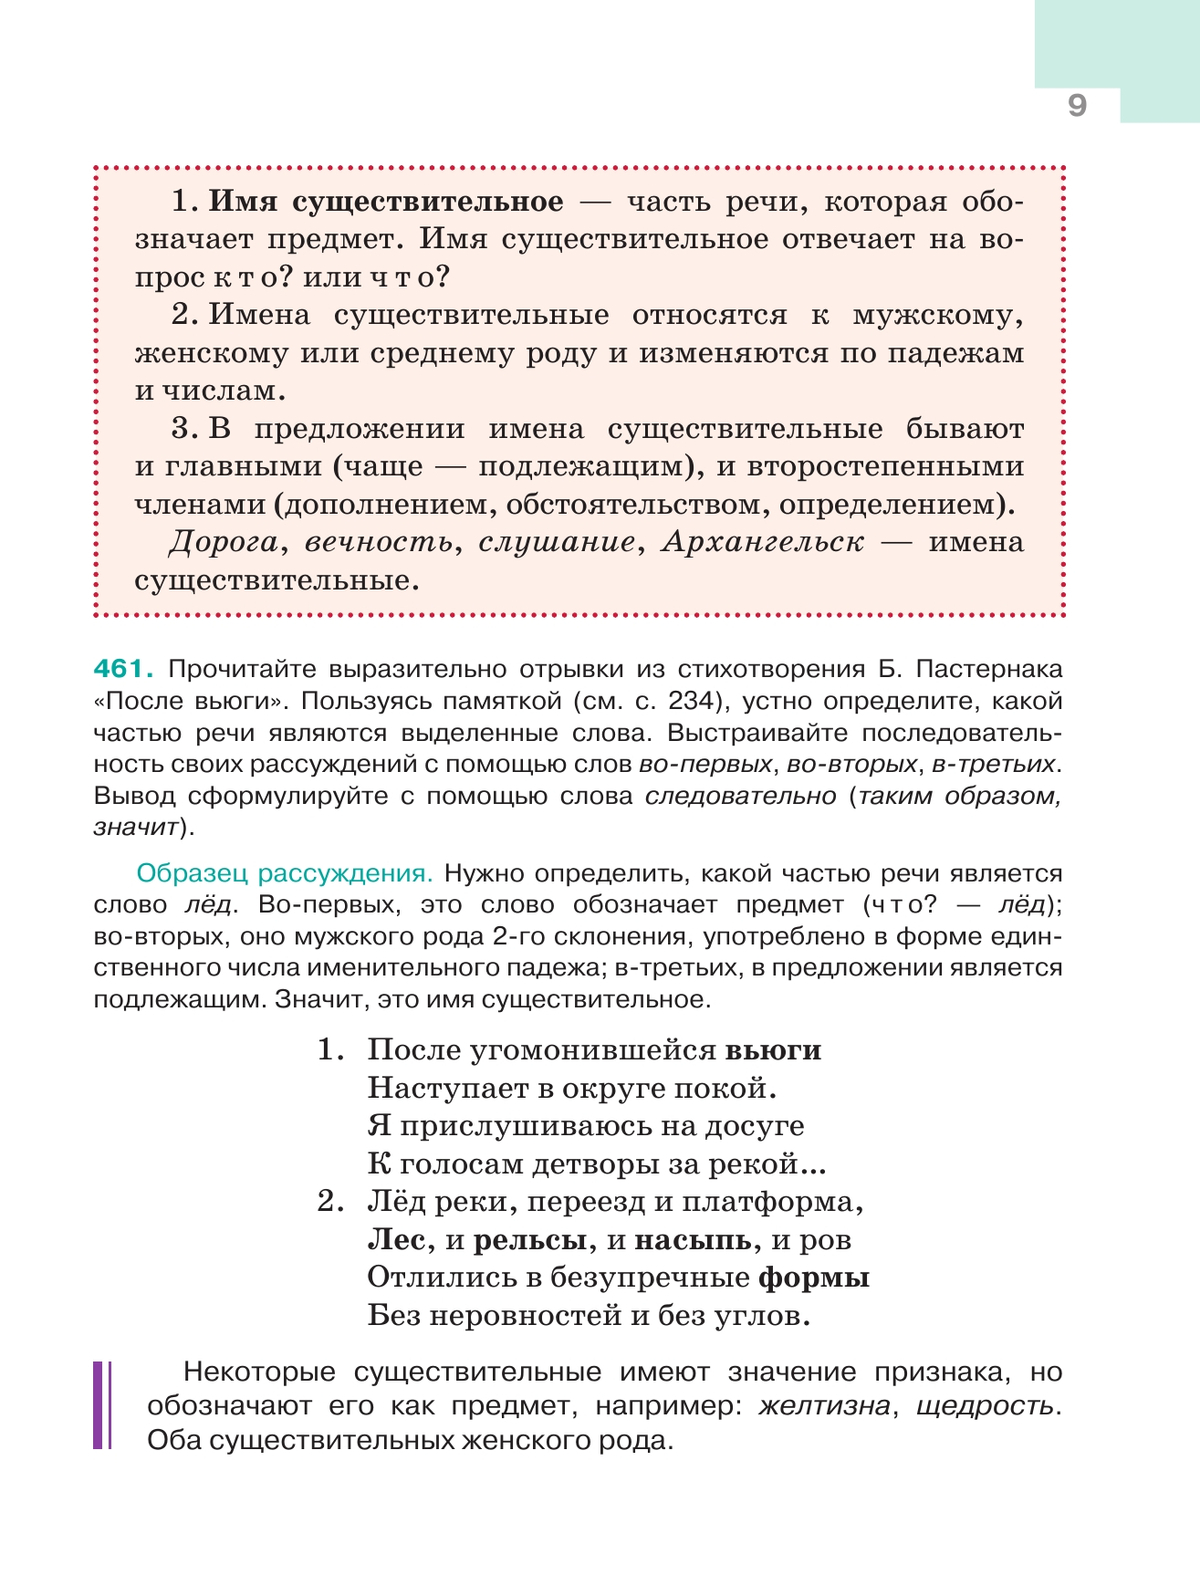 Русский язык. 5 класс. Учебник. В 2-х ч. Ч. 2 8